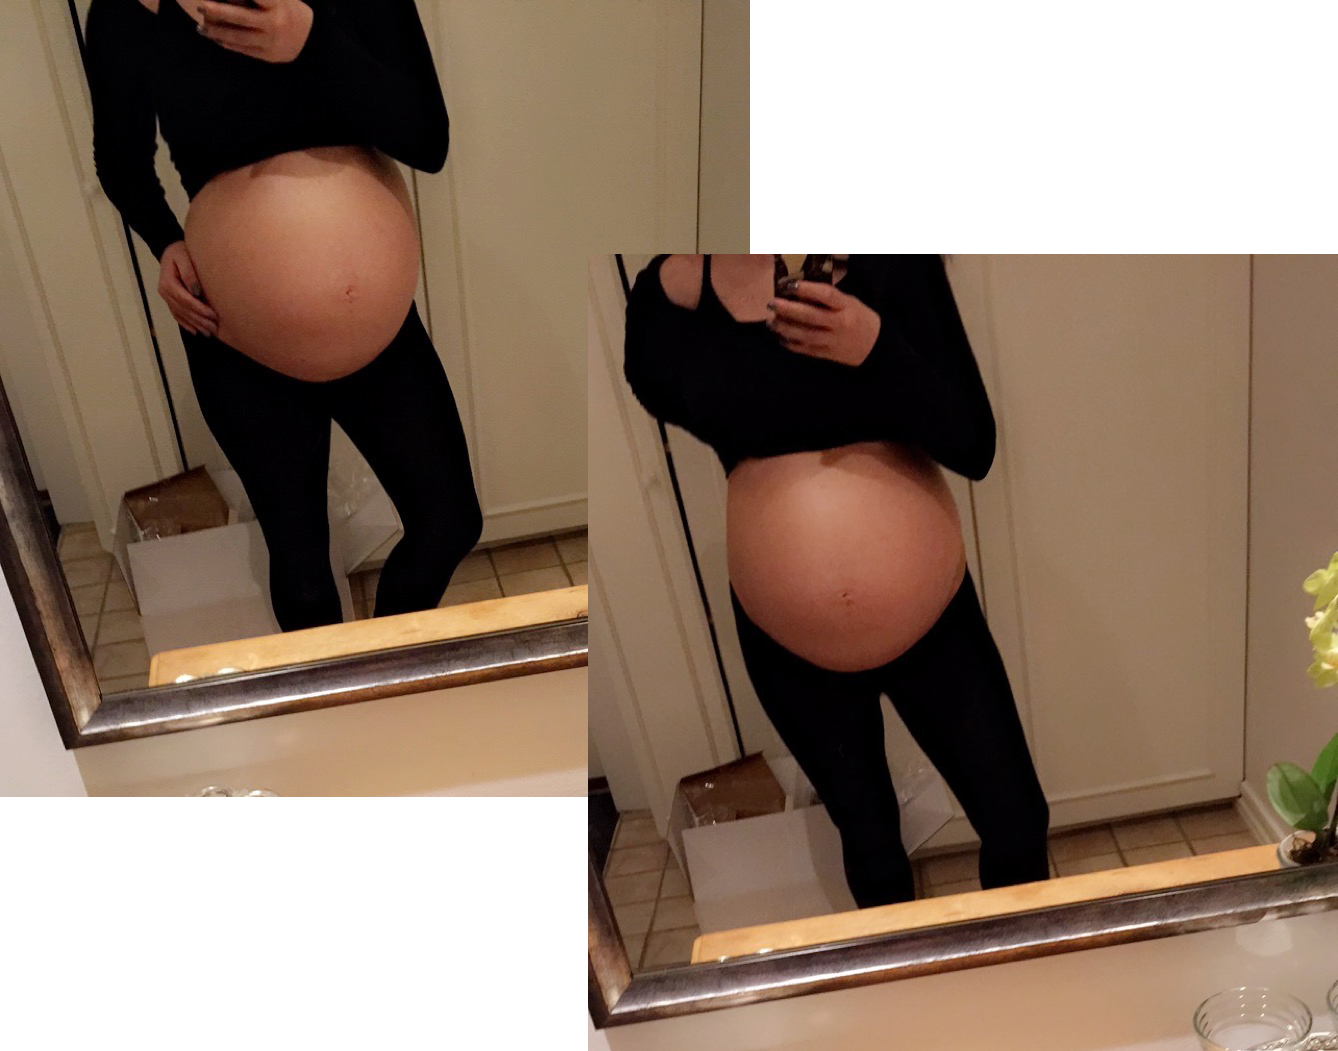 17 uger gravid